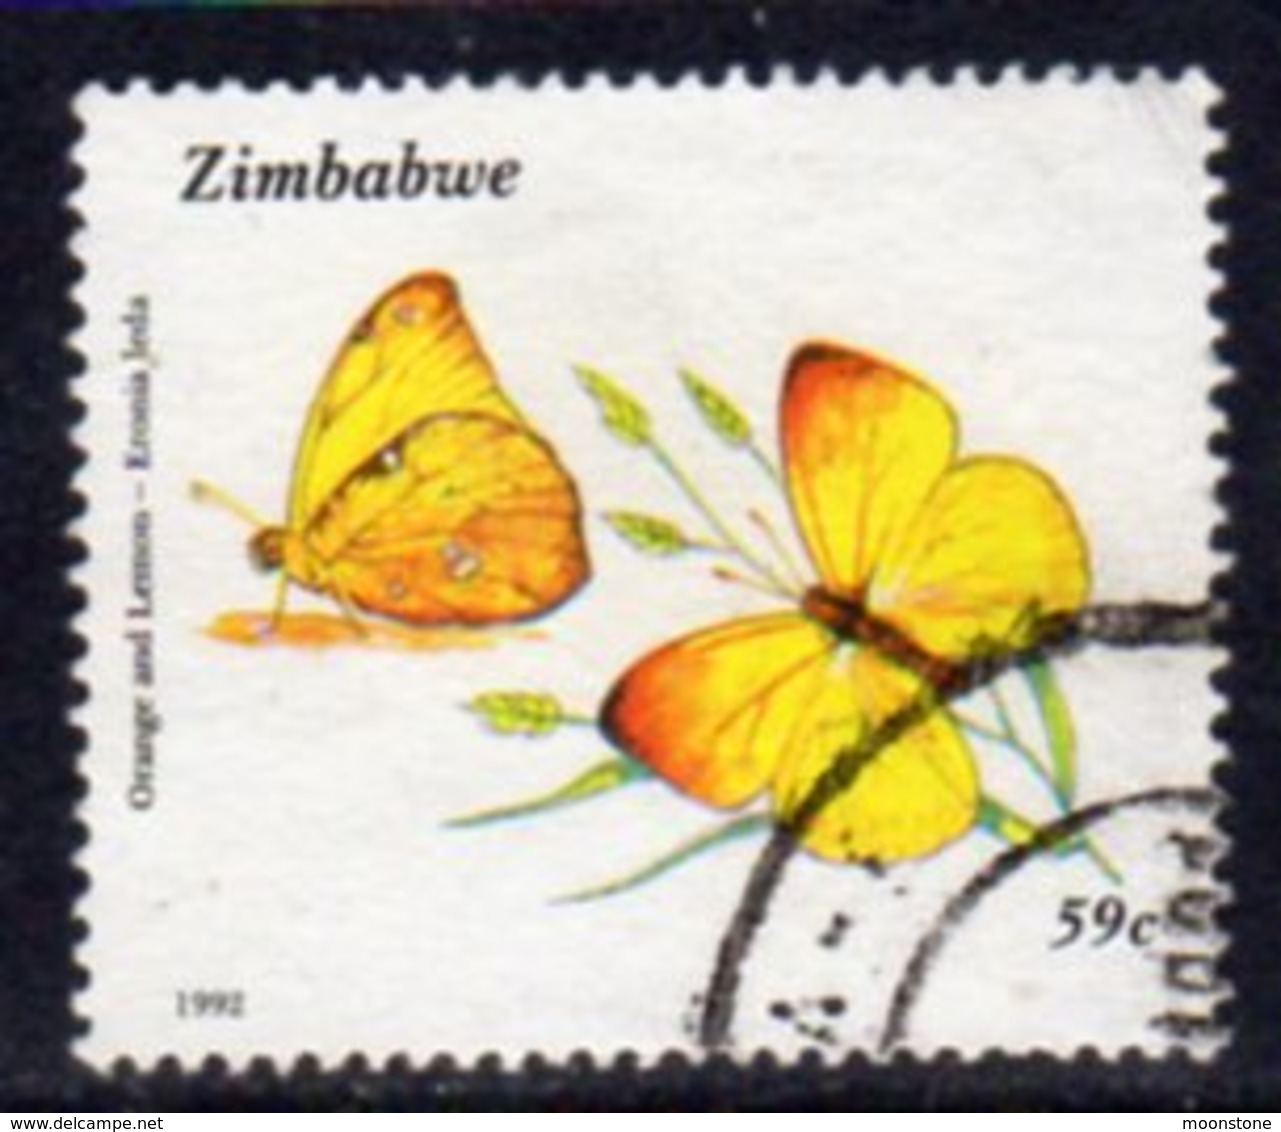 Zimbabwe 1992 Butterflies 59c Value, Used, SG 839 (BA) - Zimbabwe (1980-...)